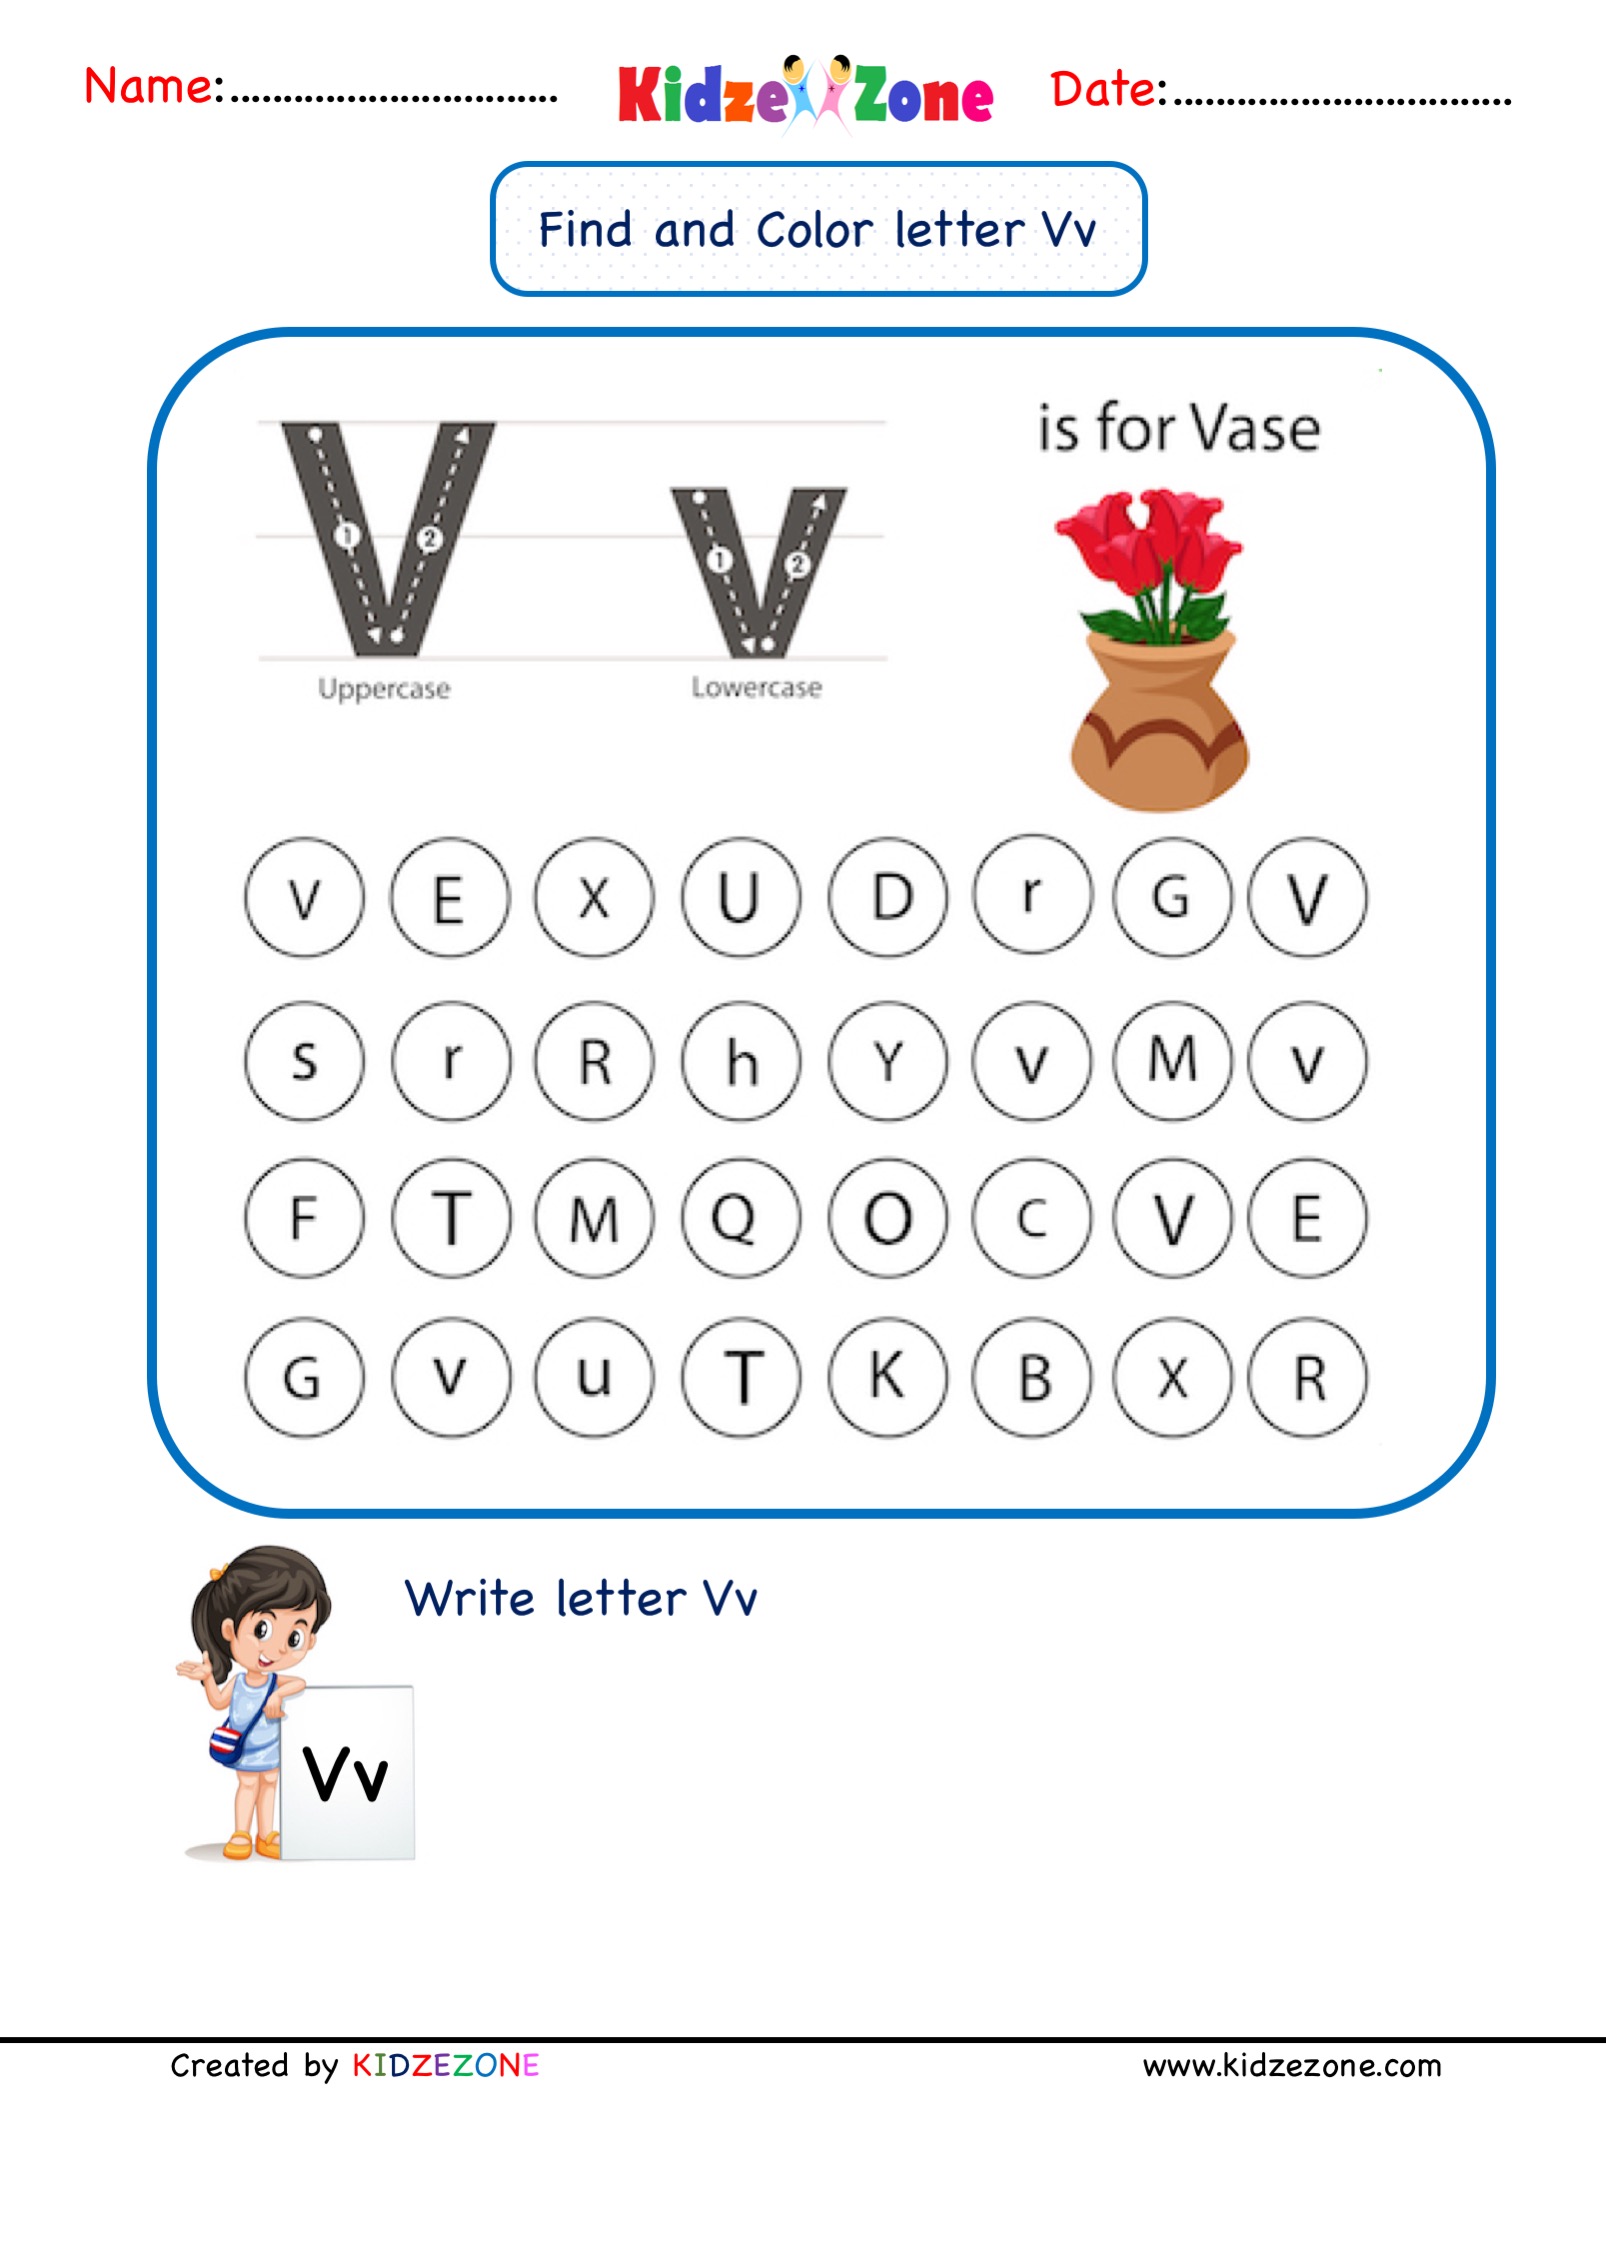 kindergarten-letter-v-worksheets-find-and-color